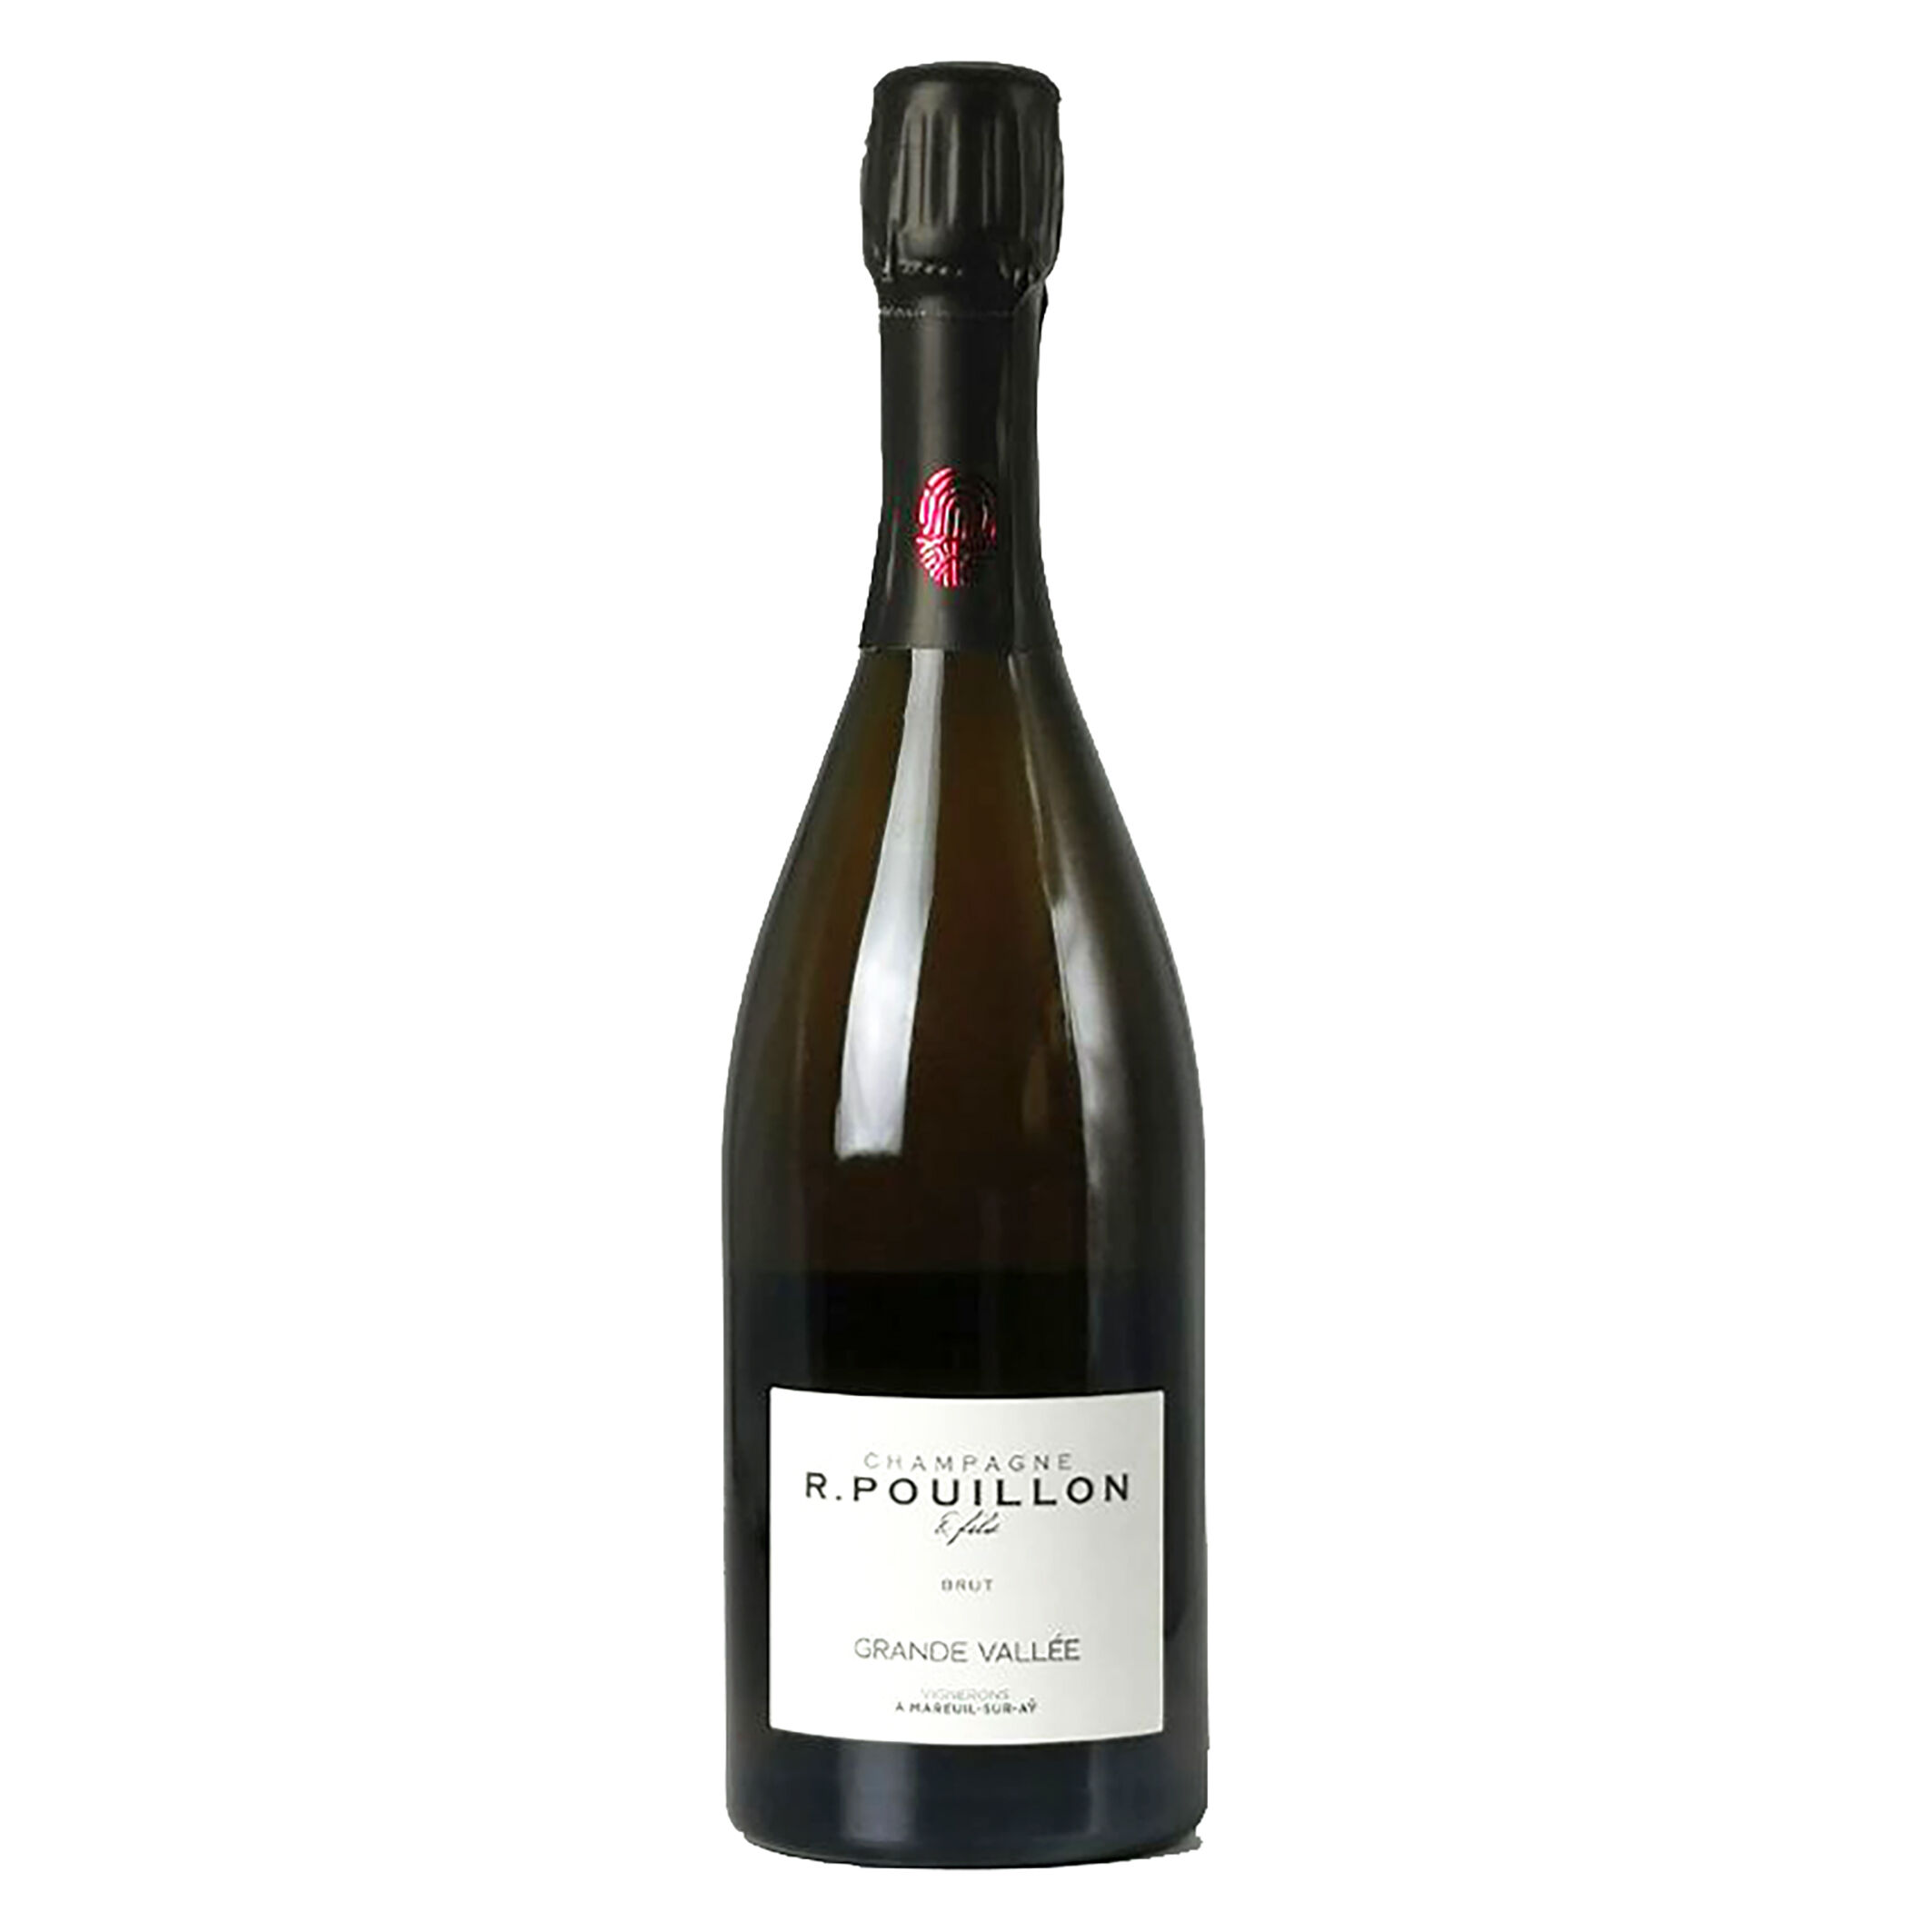 Laciviltadelbere Champagne Extra Brut "Grande Vallée" R. Pouillon & Fils